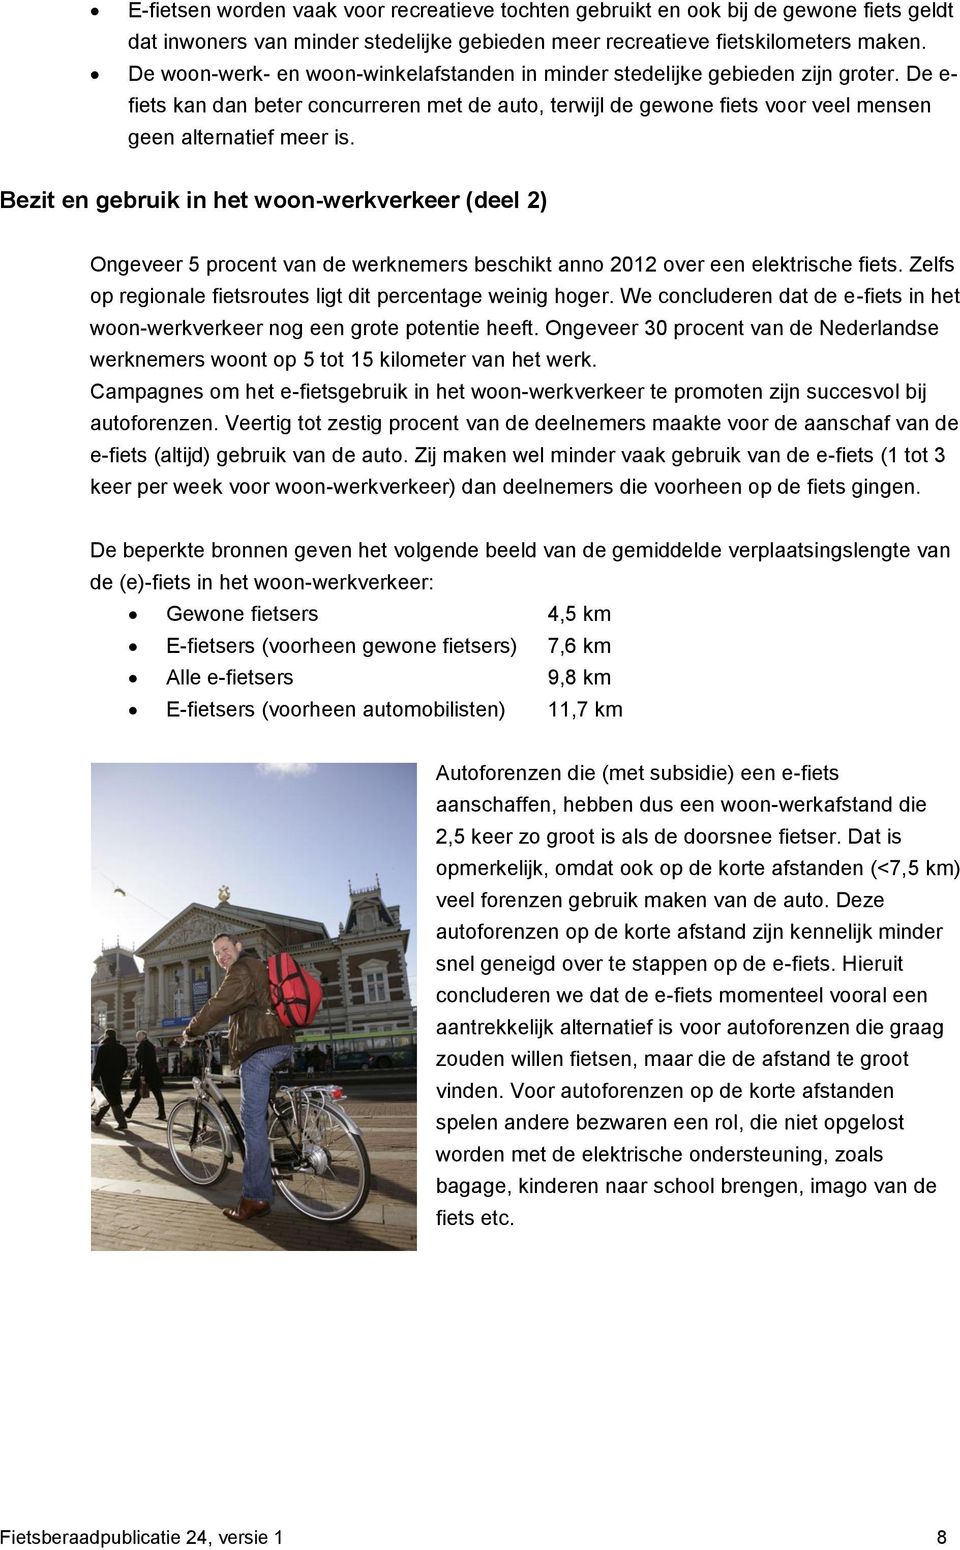 Bezit en gebruik in het woon-werkverkeer (deel 2) Ongeveer 5 procent van de werknemers beschikt anno 2012 over een elektrische fiets. Zelfs op regionale fietsroutes ligt dit percentage weinig hoger.